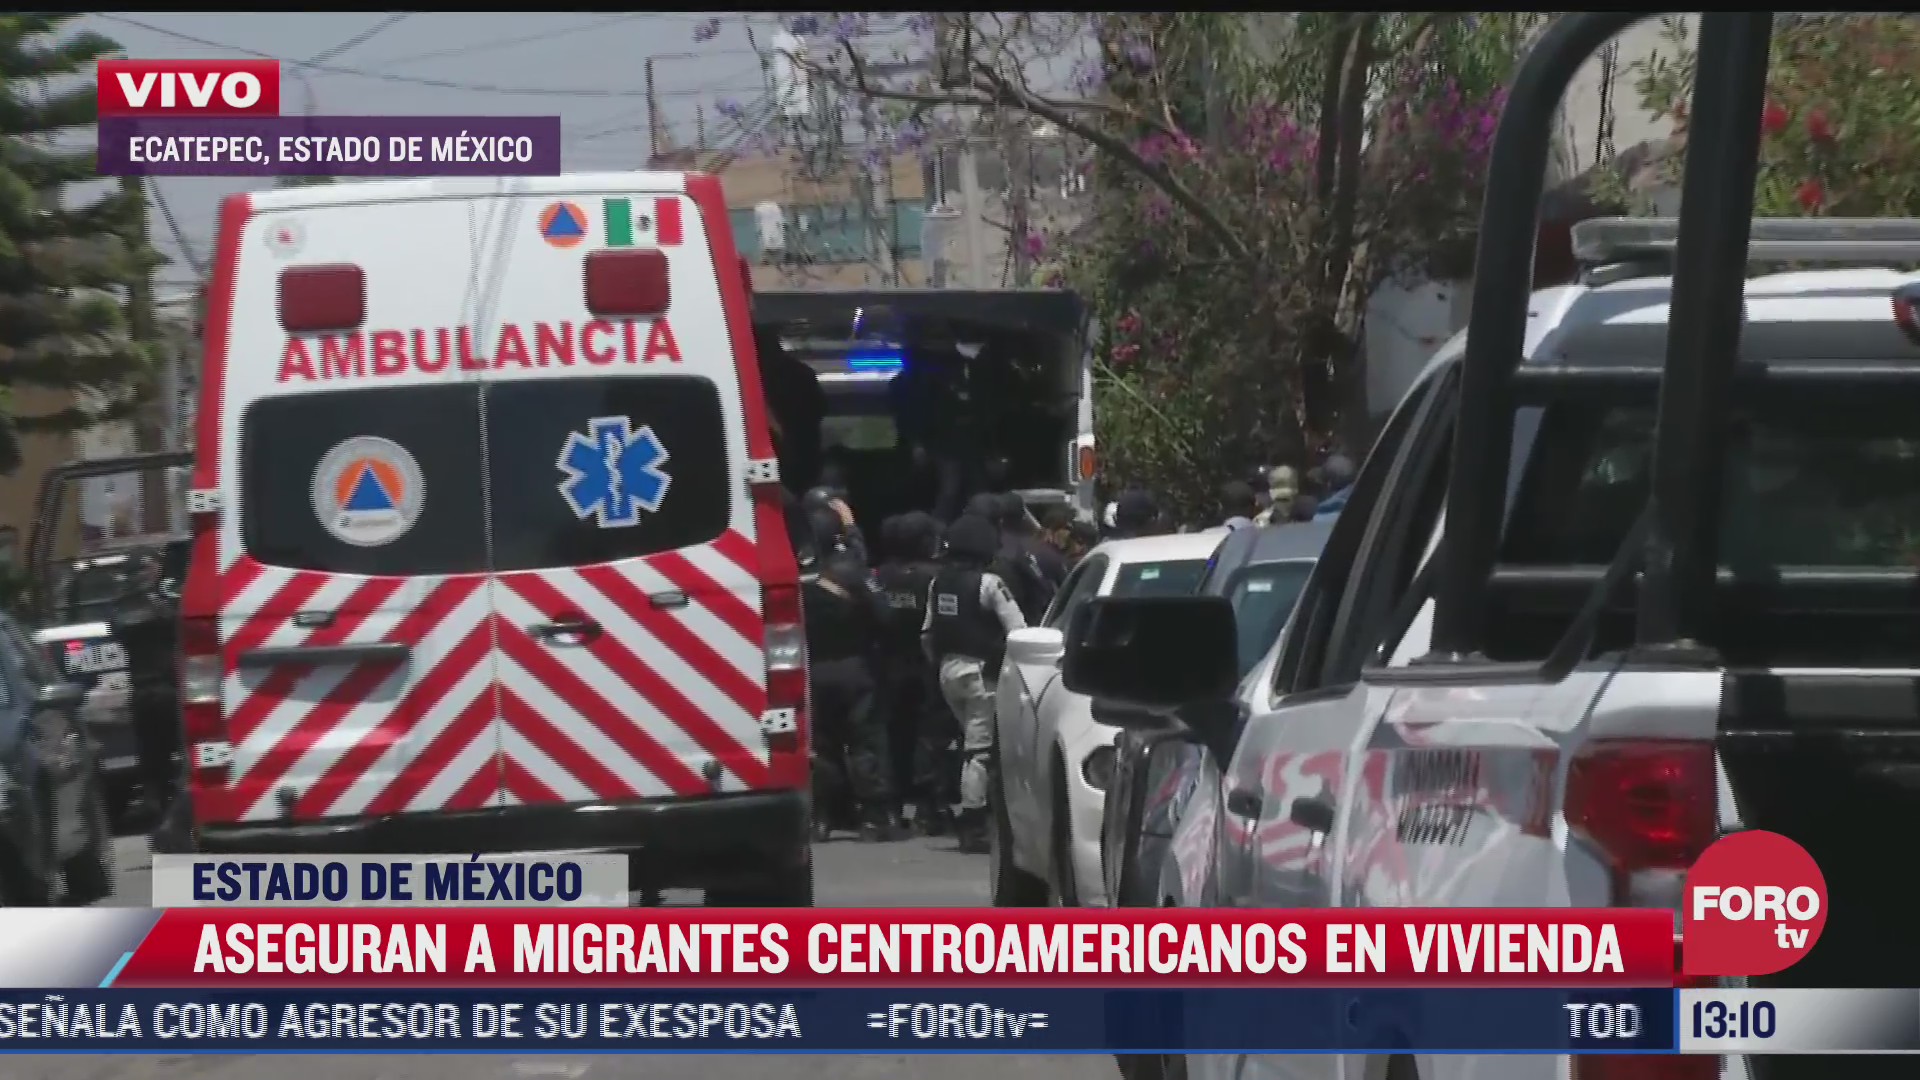 aseguran a migrantes centroamericanos en vivienda de ecatepec estado de mexico